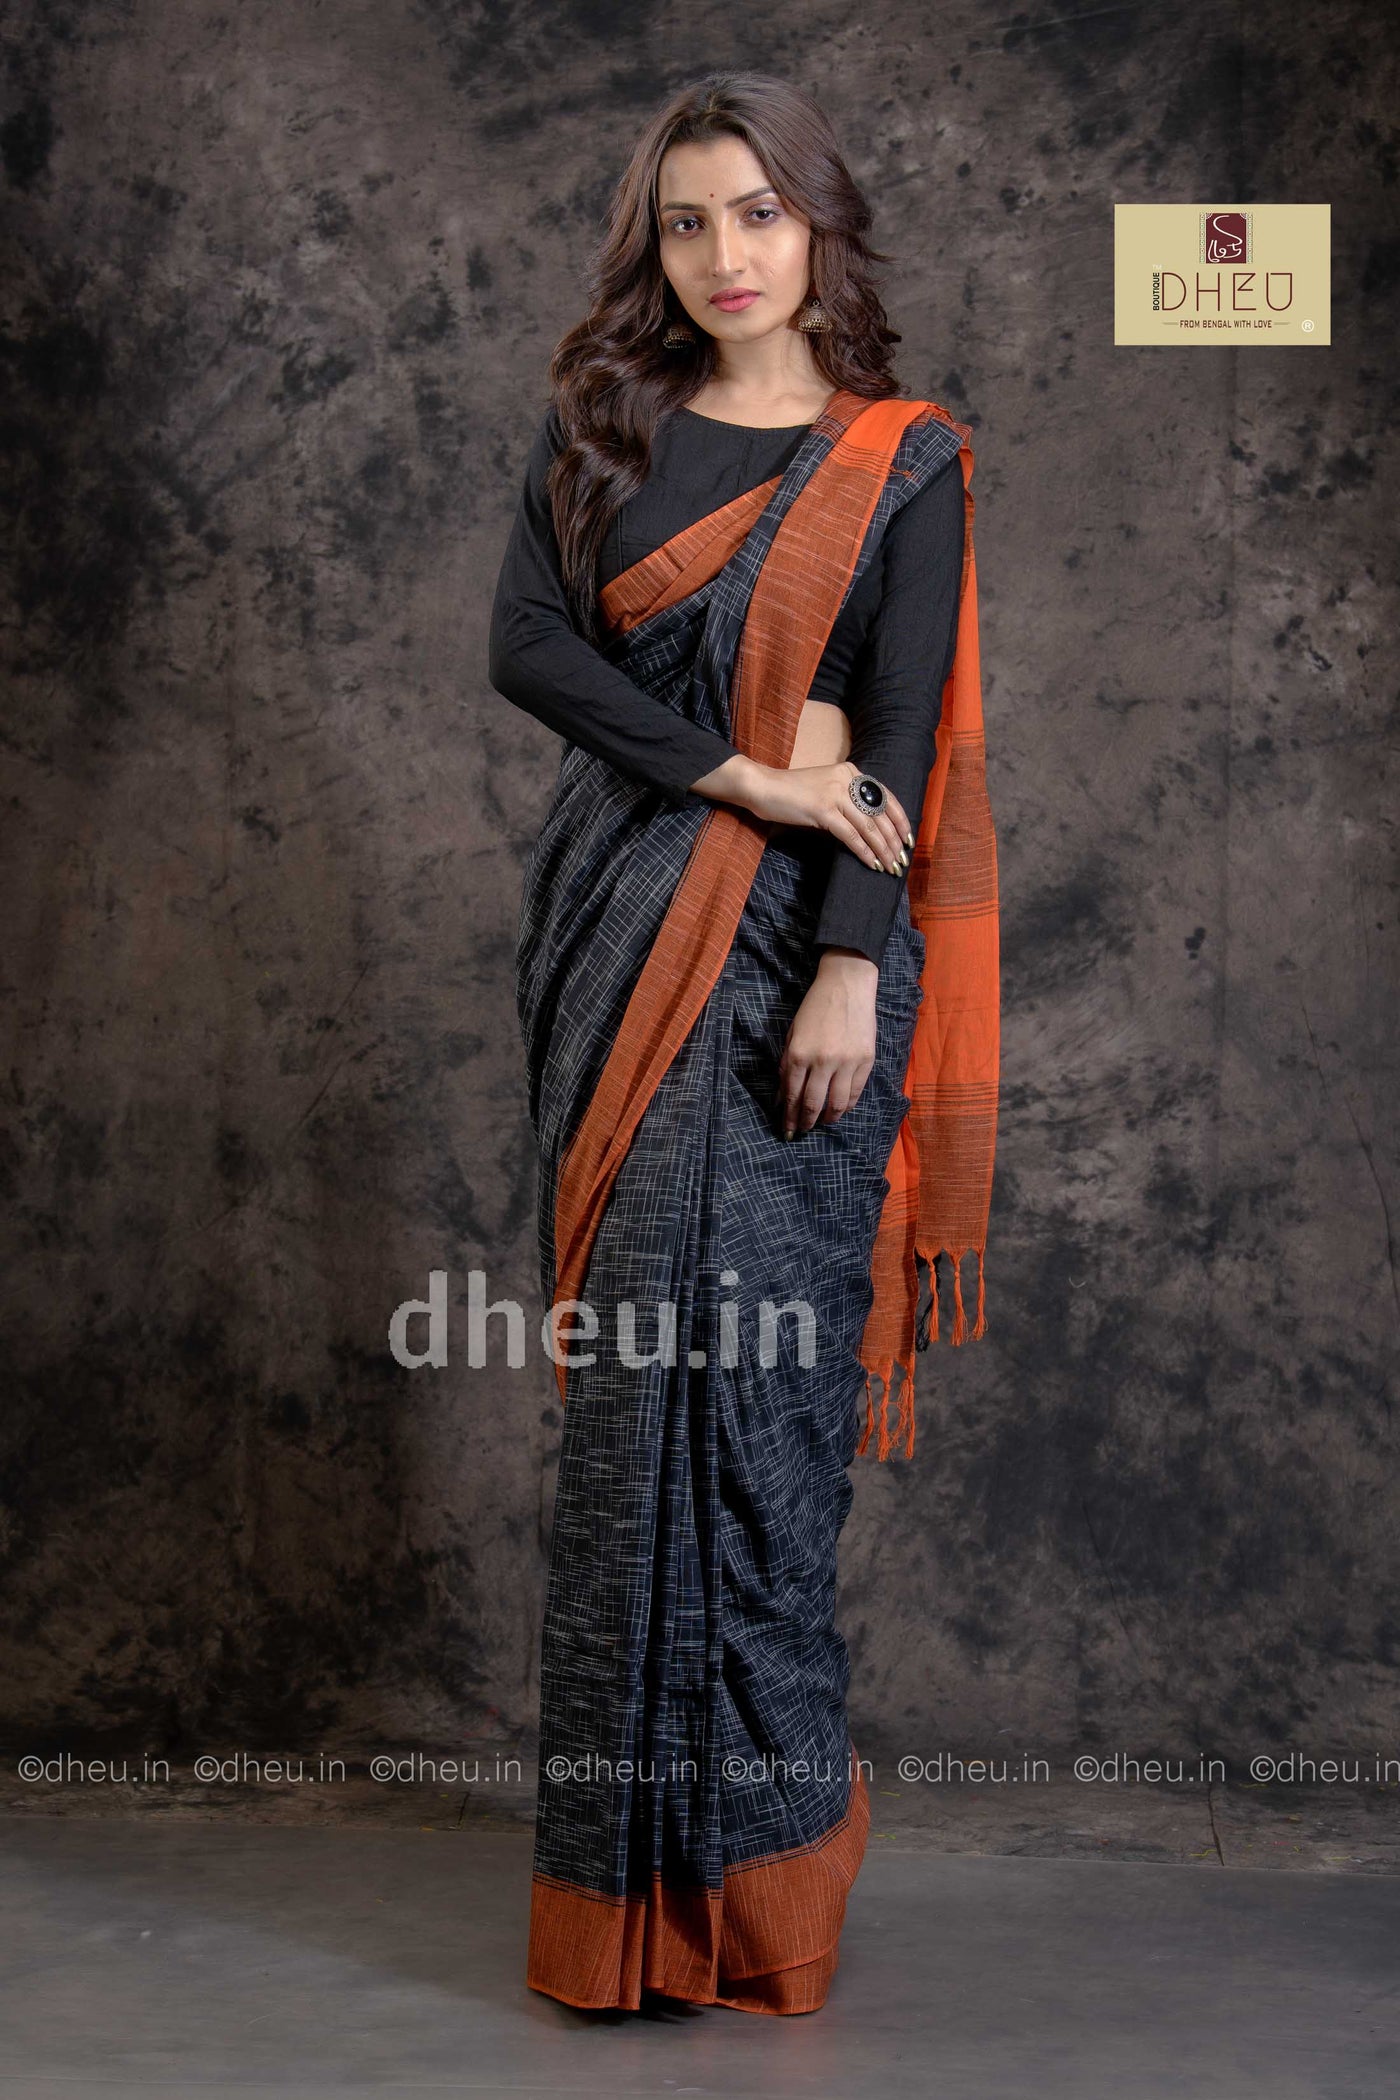 Jharna Khadi – Handloom pure Cotton Saree - Boutique Dheu